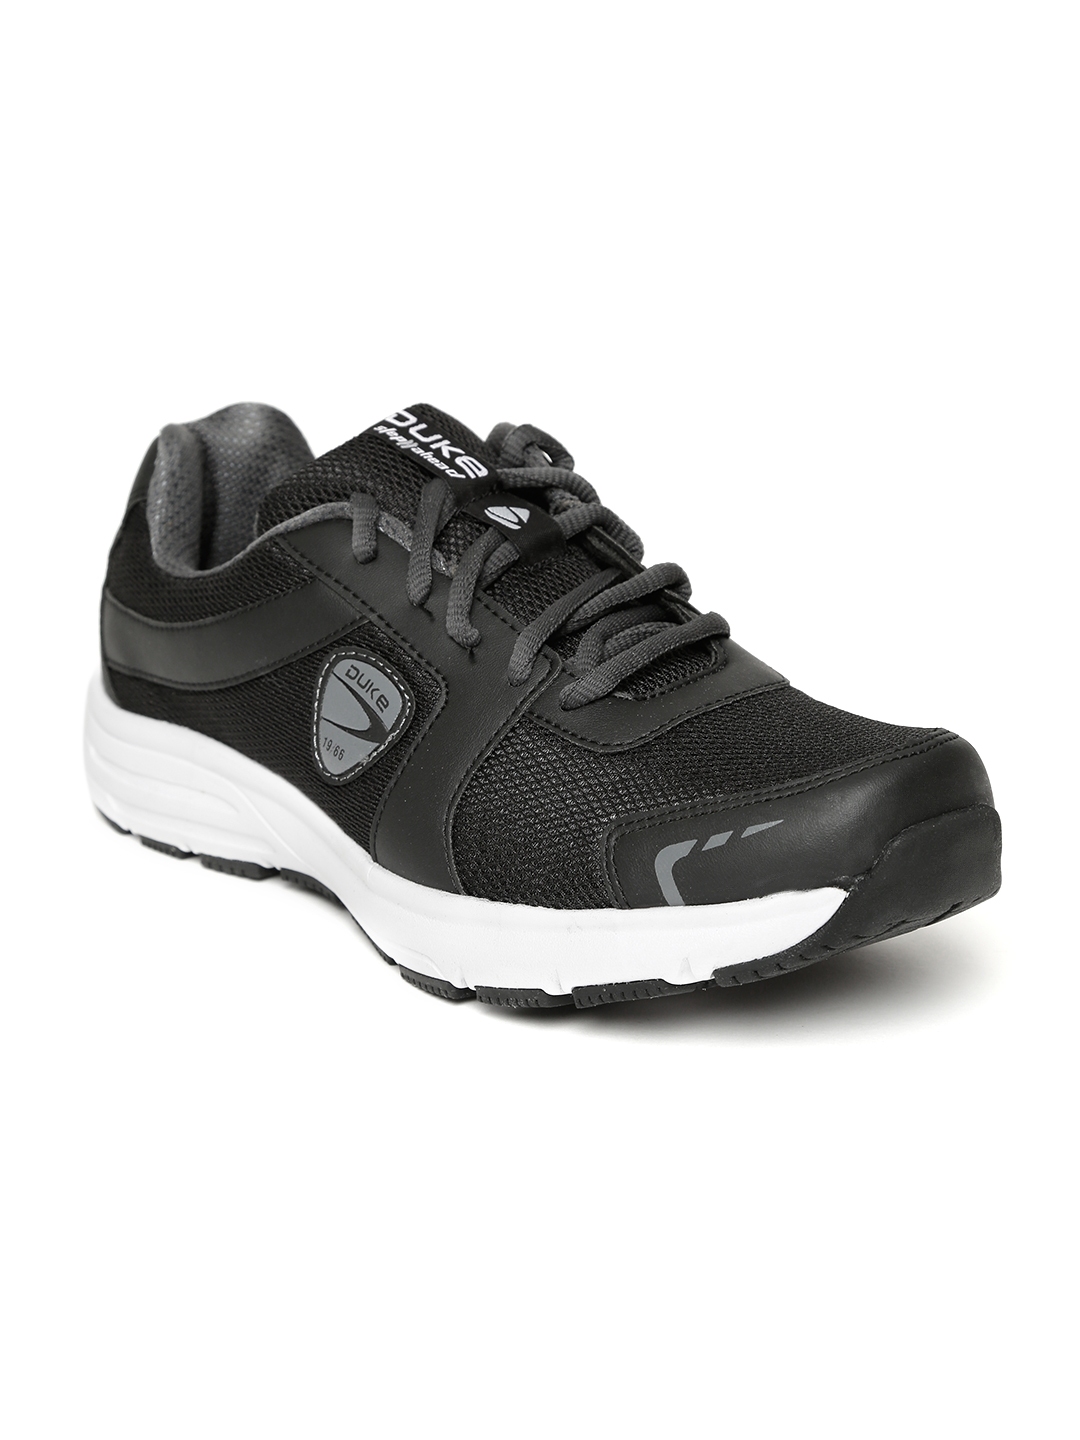 Buy Duke Men Black Running Shoes - Sports Shoes for Men 2884055 | Myntra